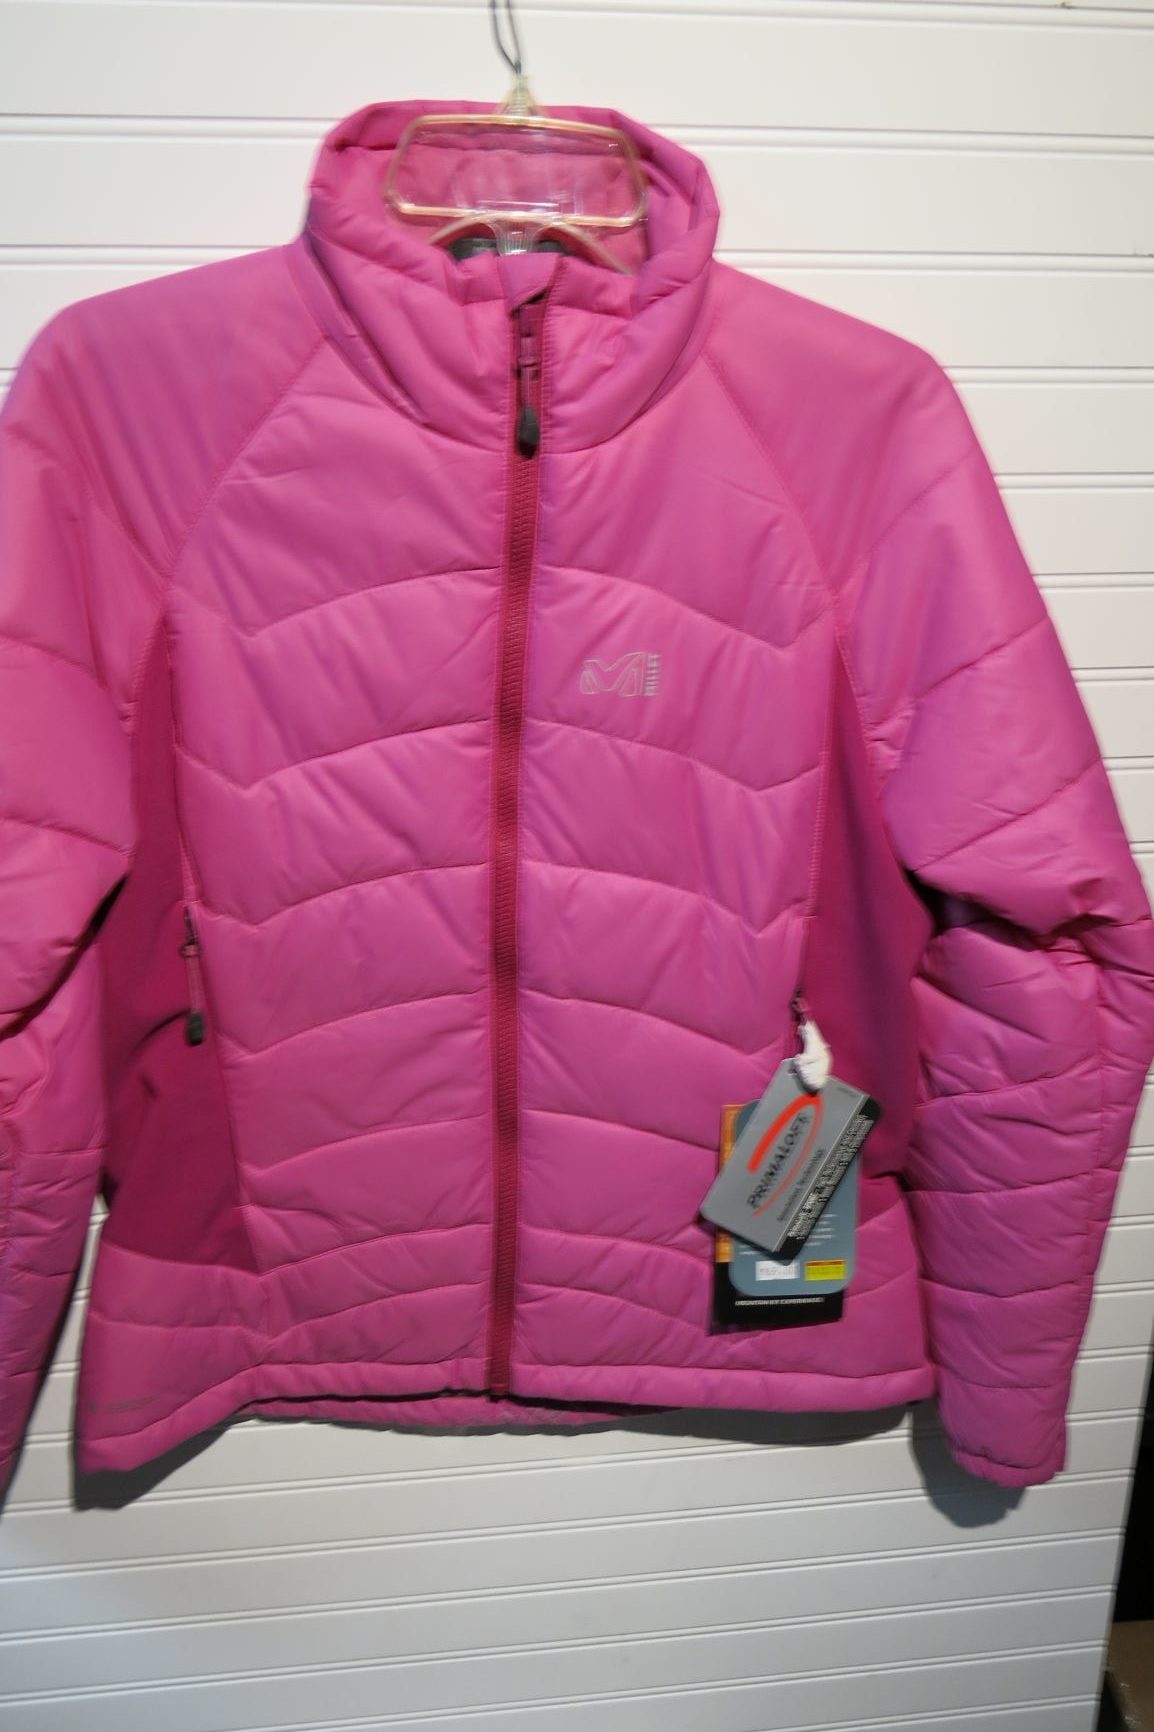 Clearance Sale - Millet - Women's - LD Composite Primaloft - pink